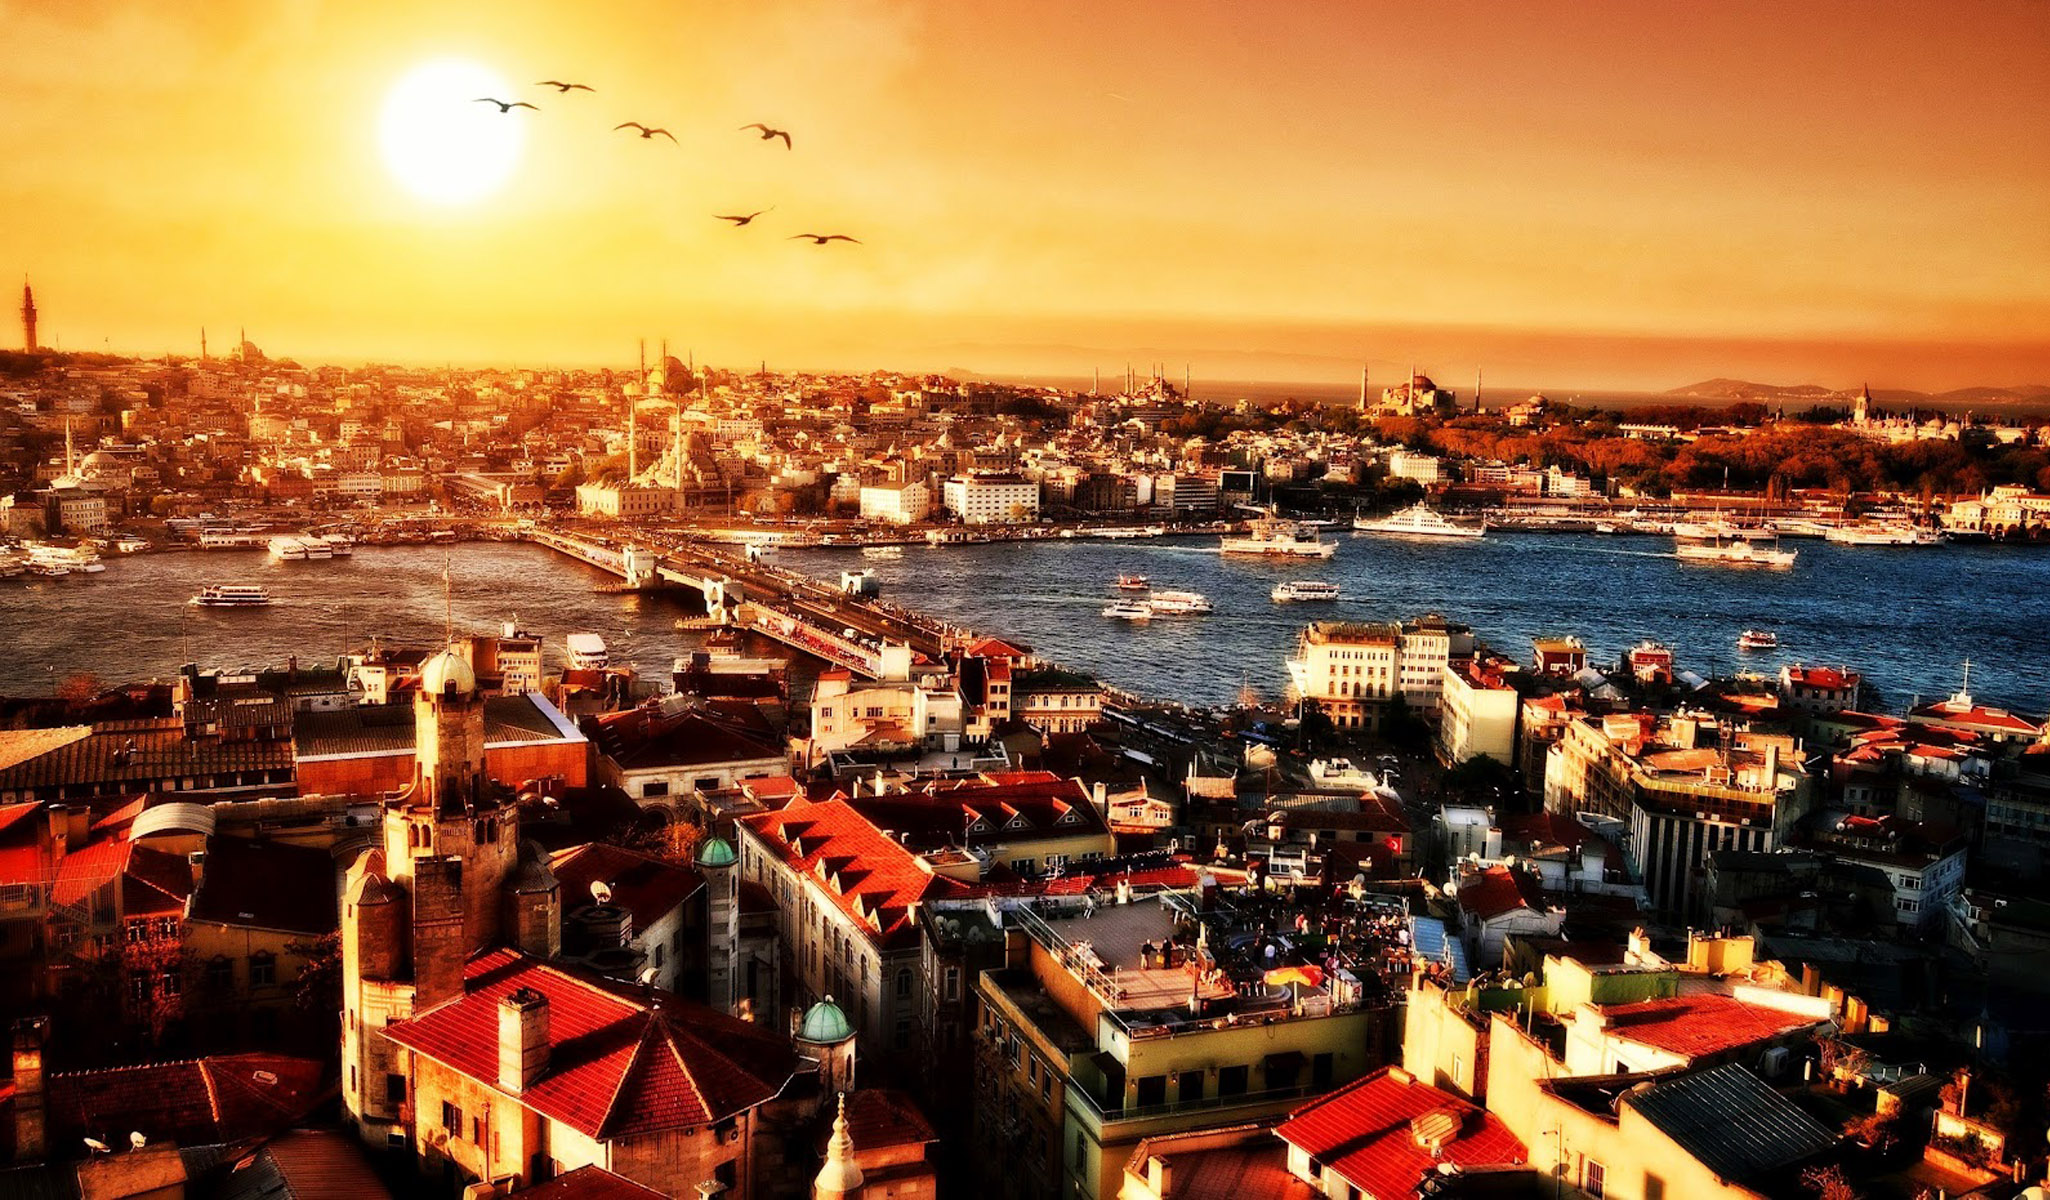 اسطنبول، ويطلق عليها أيضا اسم استانبول، واسمها القديم القسطنطيينية، كانت عاصمة عدة امبراطوريات حكمت قلب العالم على مدار التاريخ، هي اسطنبول التاريخ والحضارة والفن، هي اسطنبول اذا، المدينة الوحيدة التي تقع على قارتين